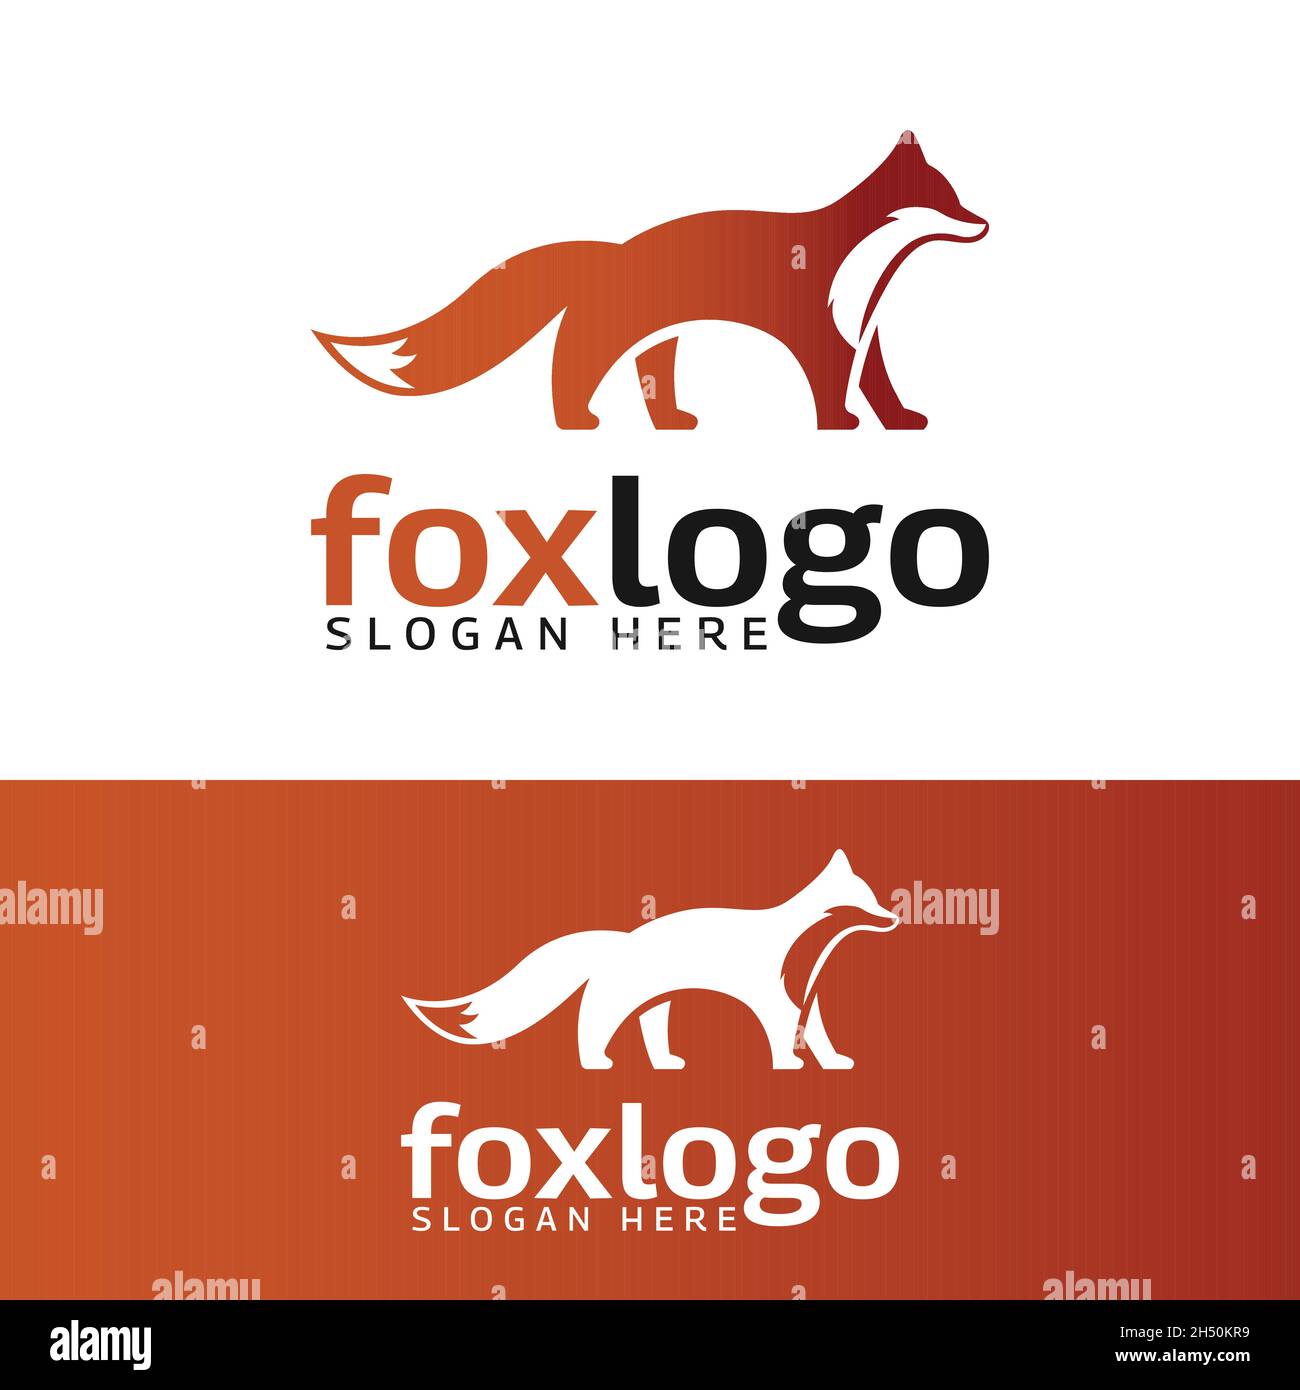 Modèle de conception de logo Orange de la silhouette de renard moderne.Adapté pour être utilisé comme mascotte pour les applications numériques, les marques ou les logos d'entreprise. Illustration de Vecteur